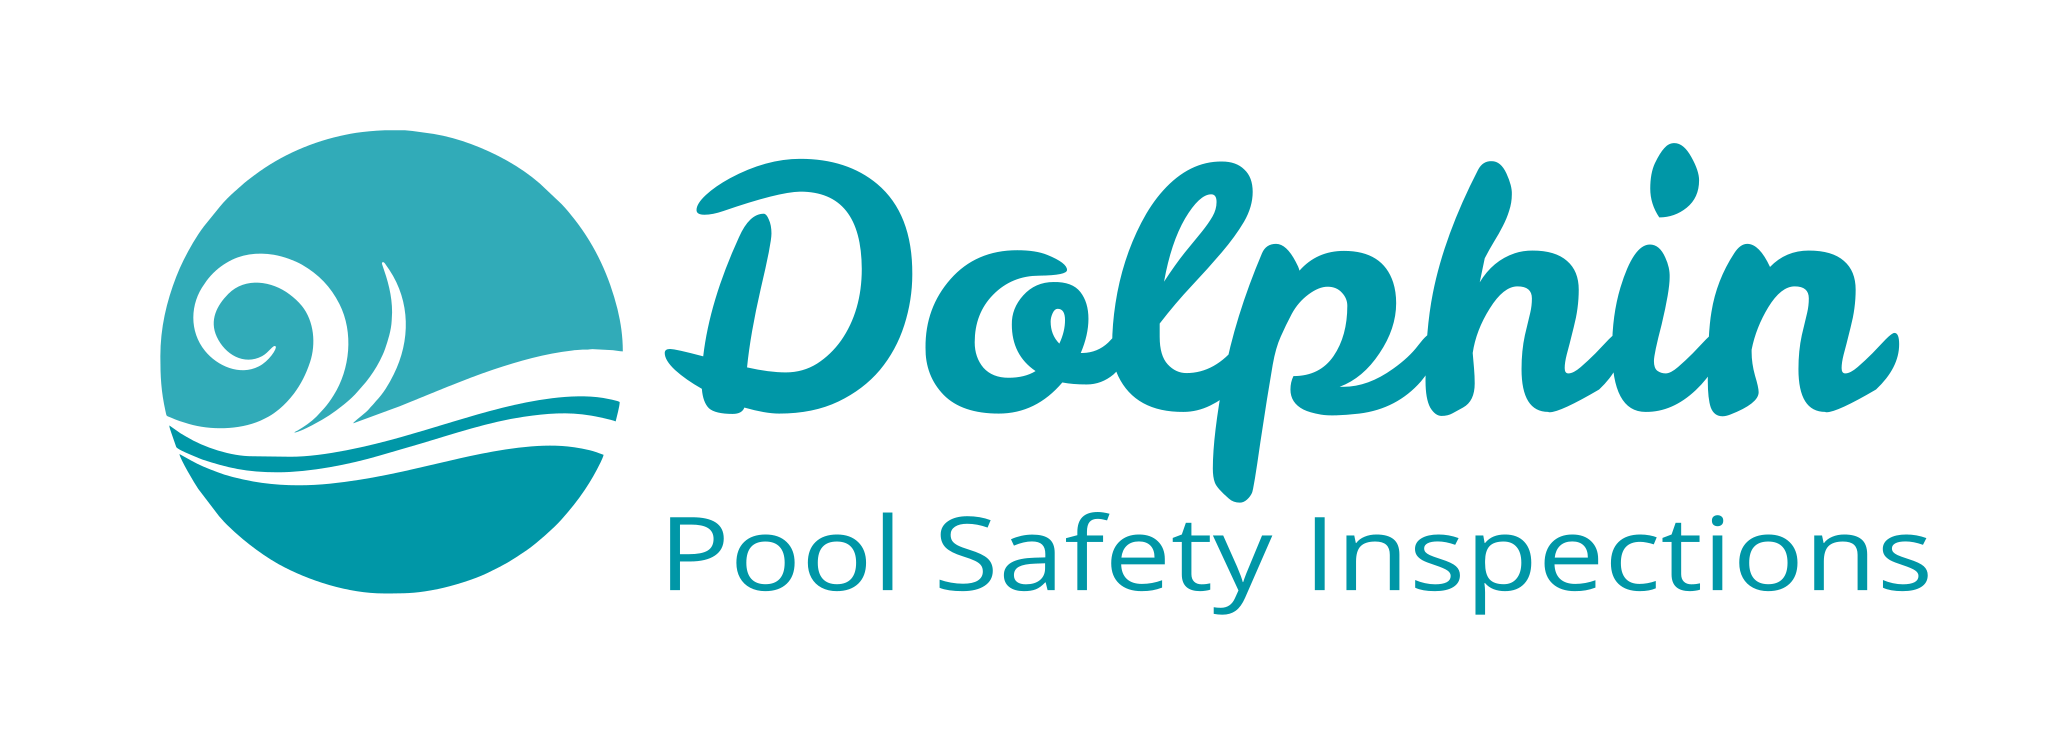 Dolphin logo large